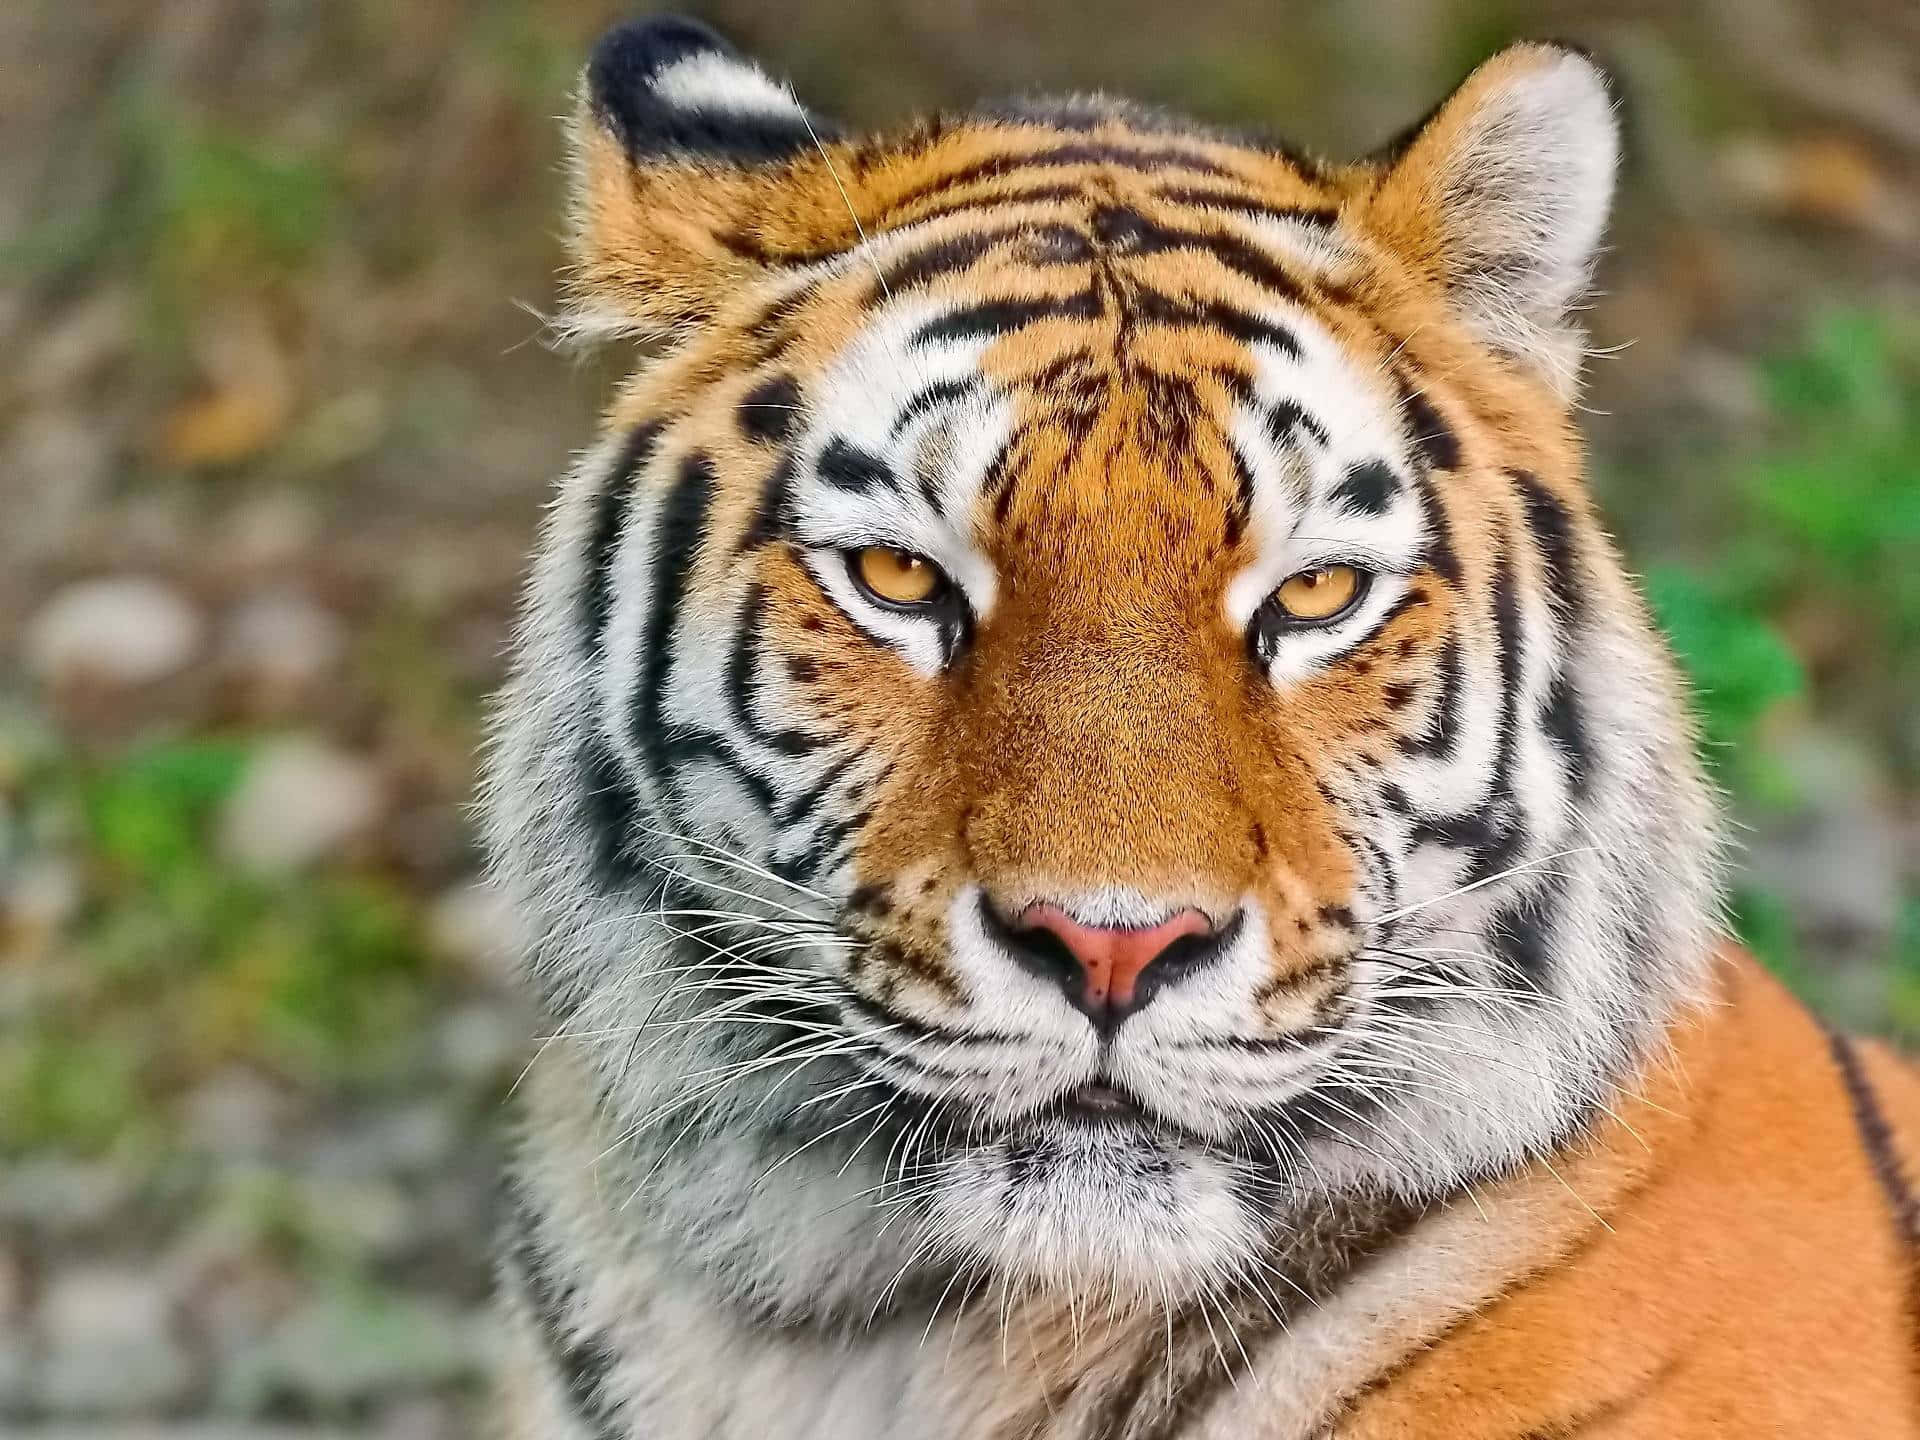 Tigerface-bilder